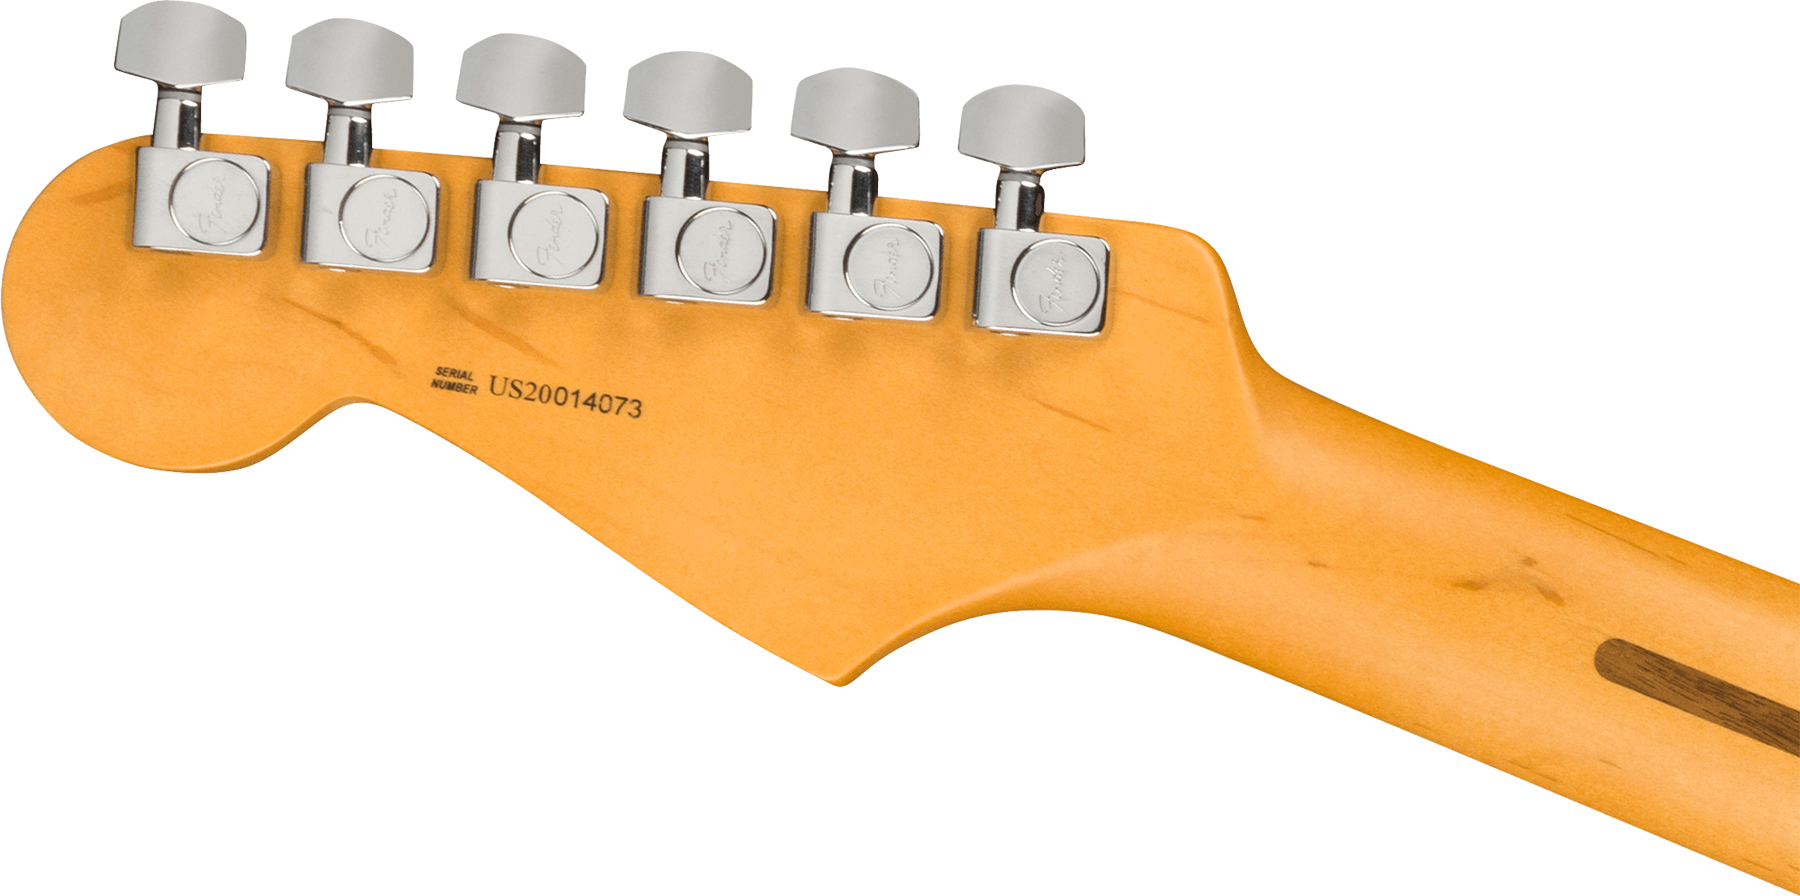 Fender Strat American Professional Ii Usa Rw - Miami Blue - Guitarra eléctrica con forma de str. - Variation 3